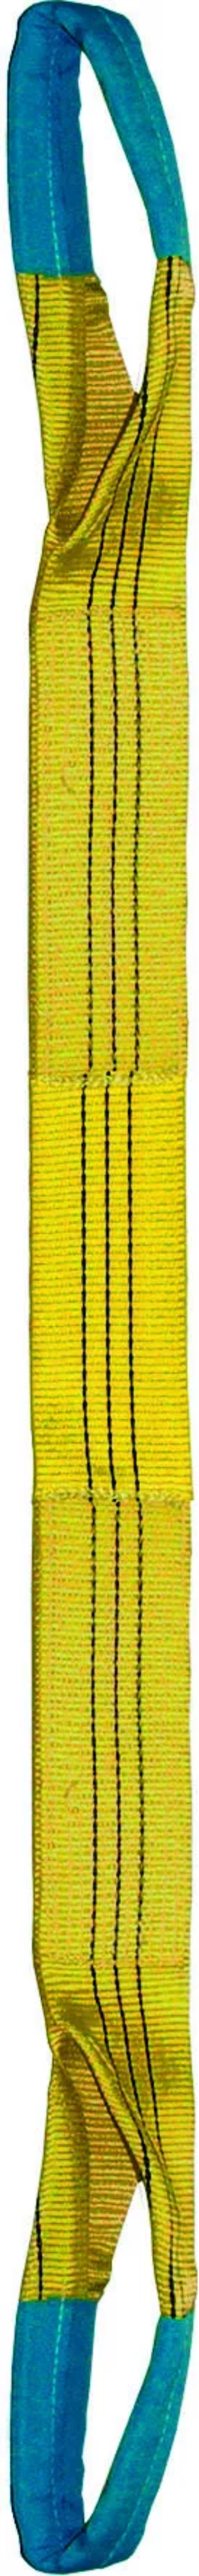 Élingue sangle double 90 mm cmu 3 t jaune boucles repliées lg. 4 m LEVAC - 4822C40